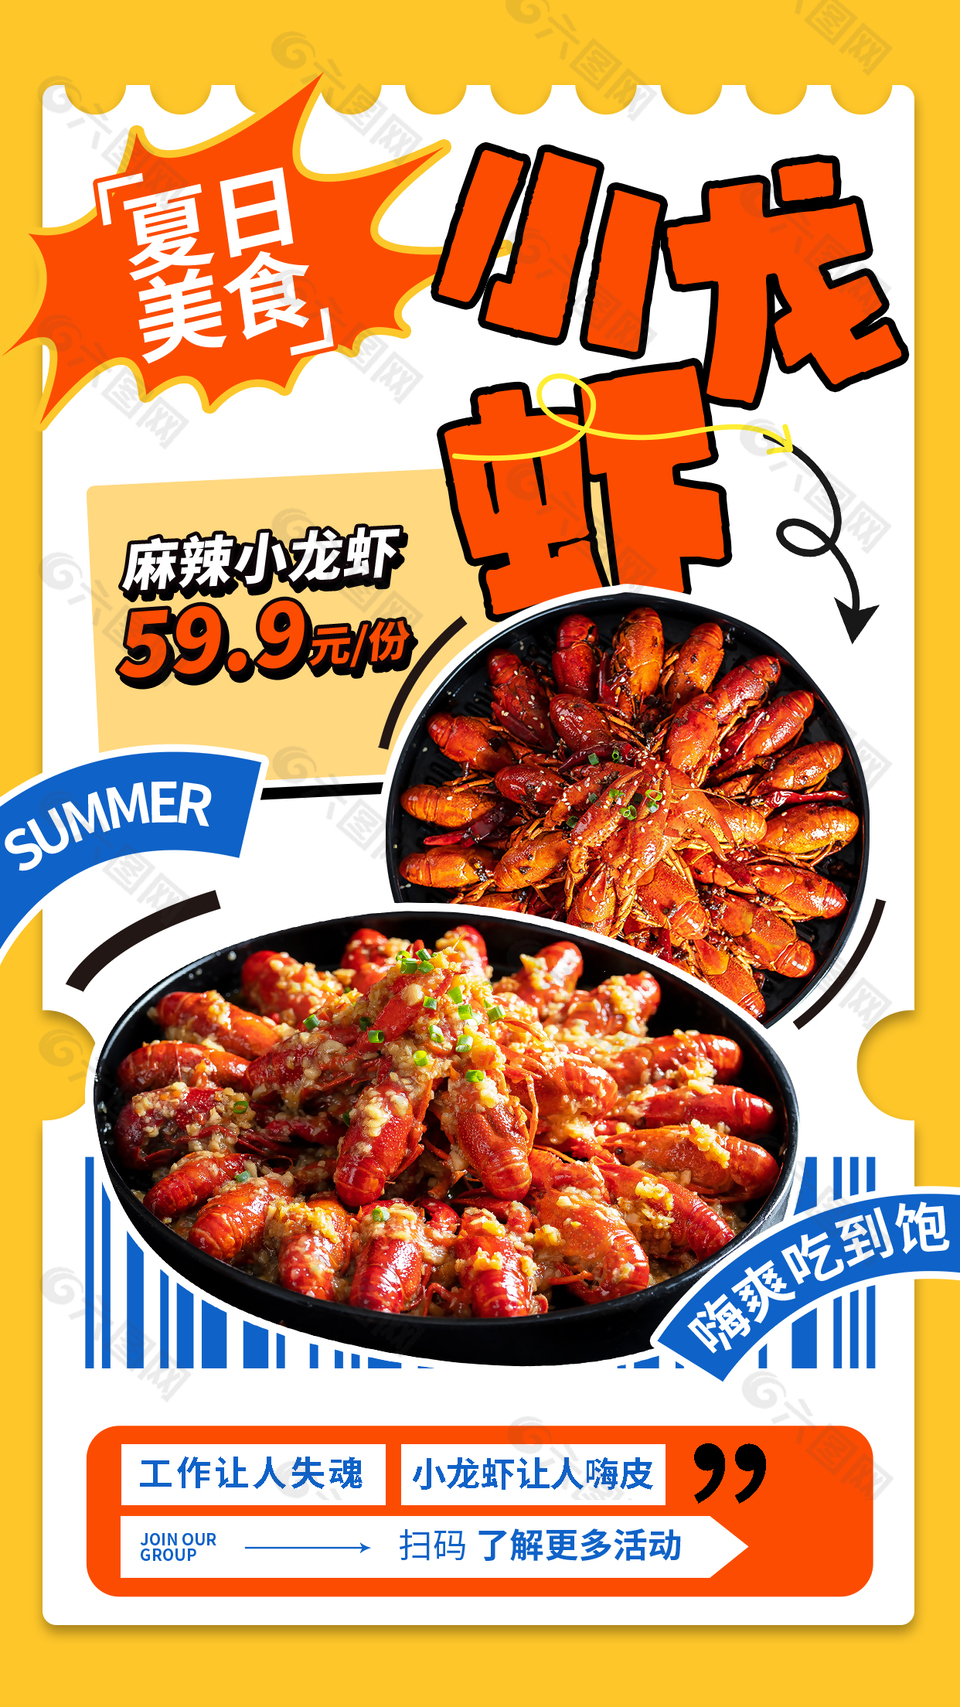 夏日美食麻辣小龙虾新鲜美味宣传海报